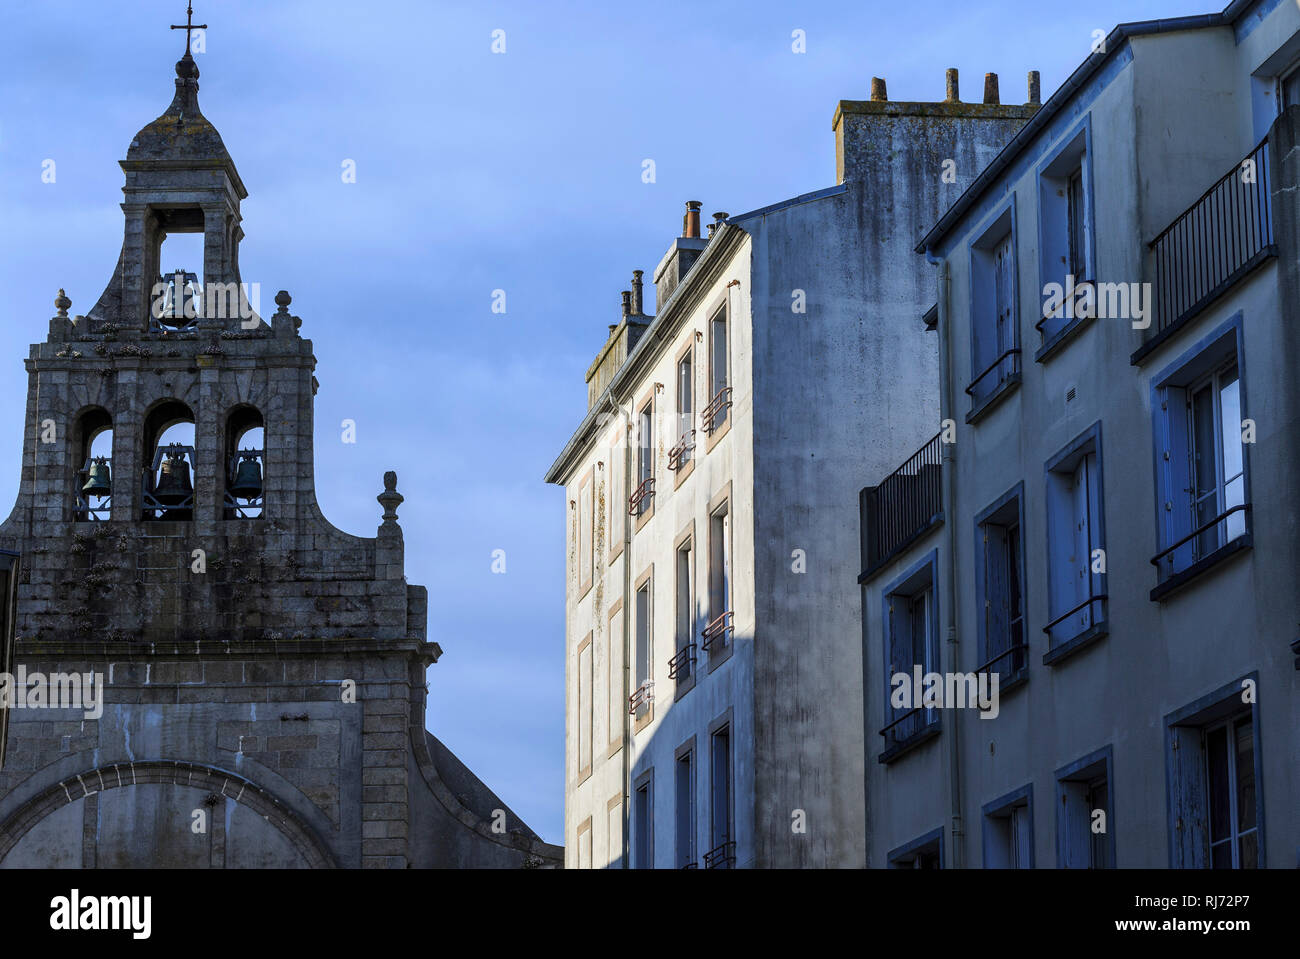 Europa, Frankreich, Bretagne, Brest, "Eglise Saint-Sauveur' und bescheidenes Wohnhaus Foto Stock